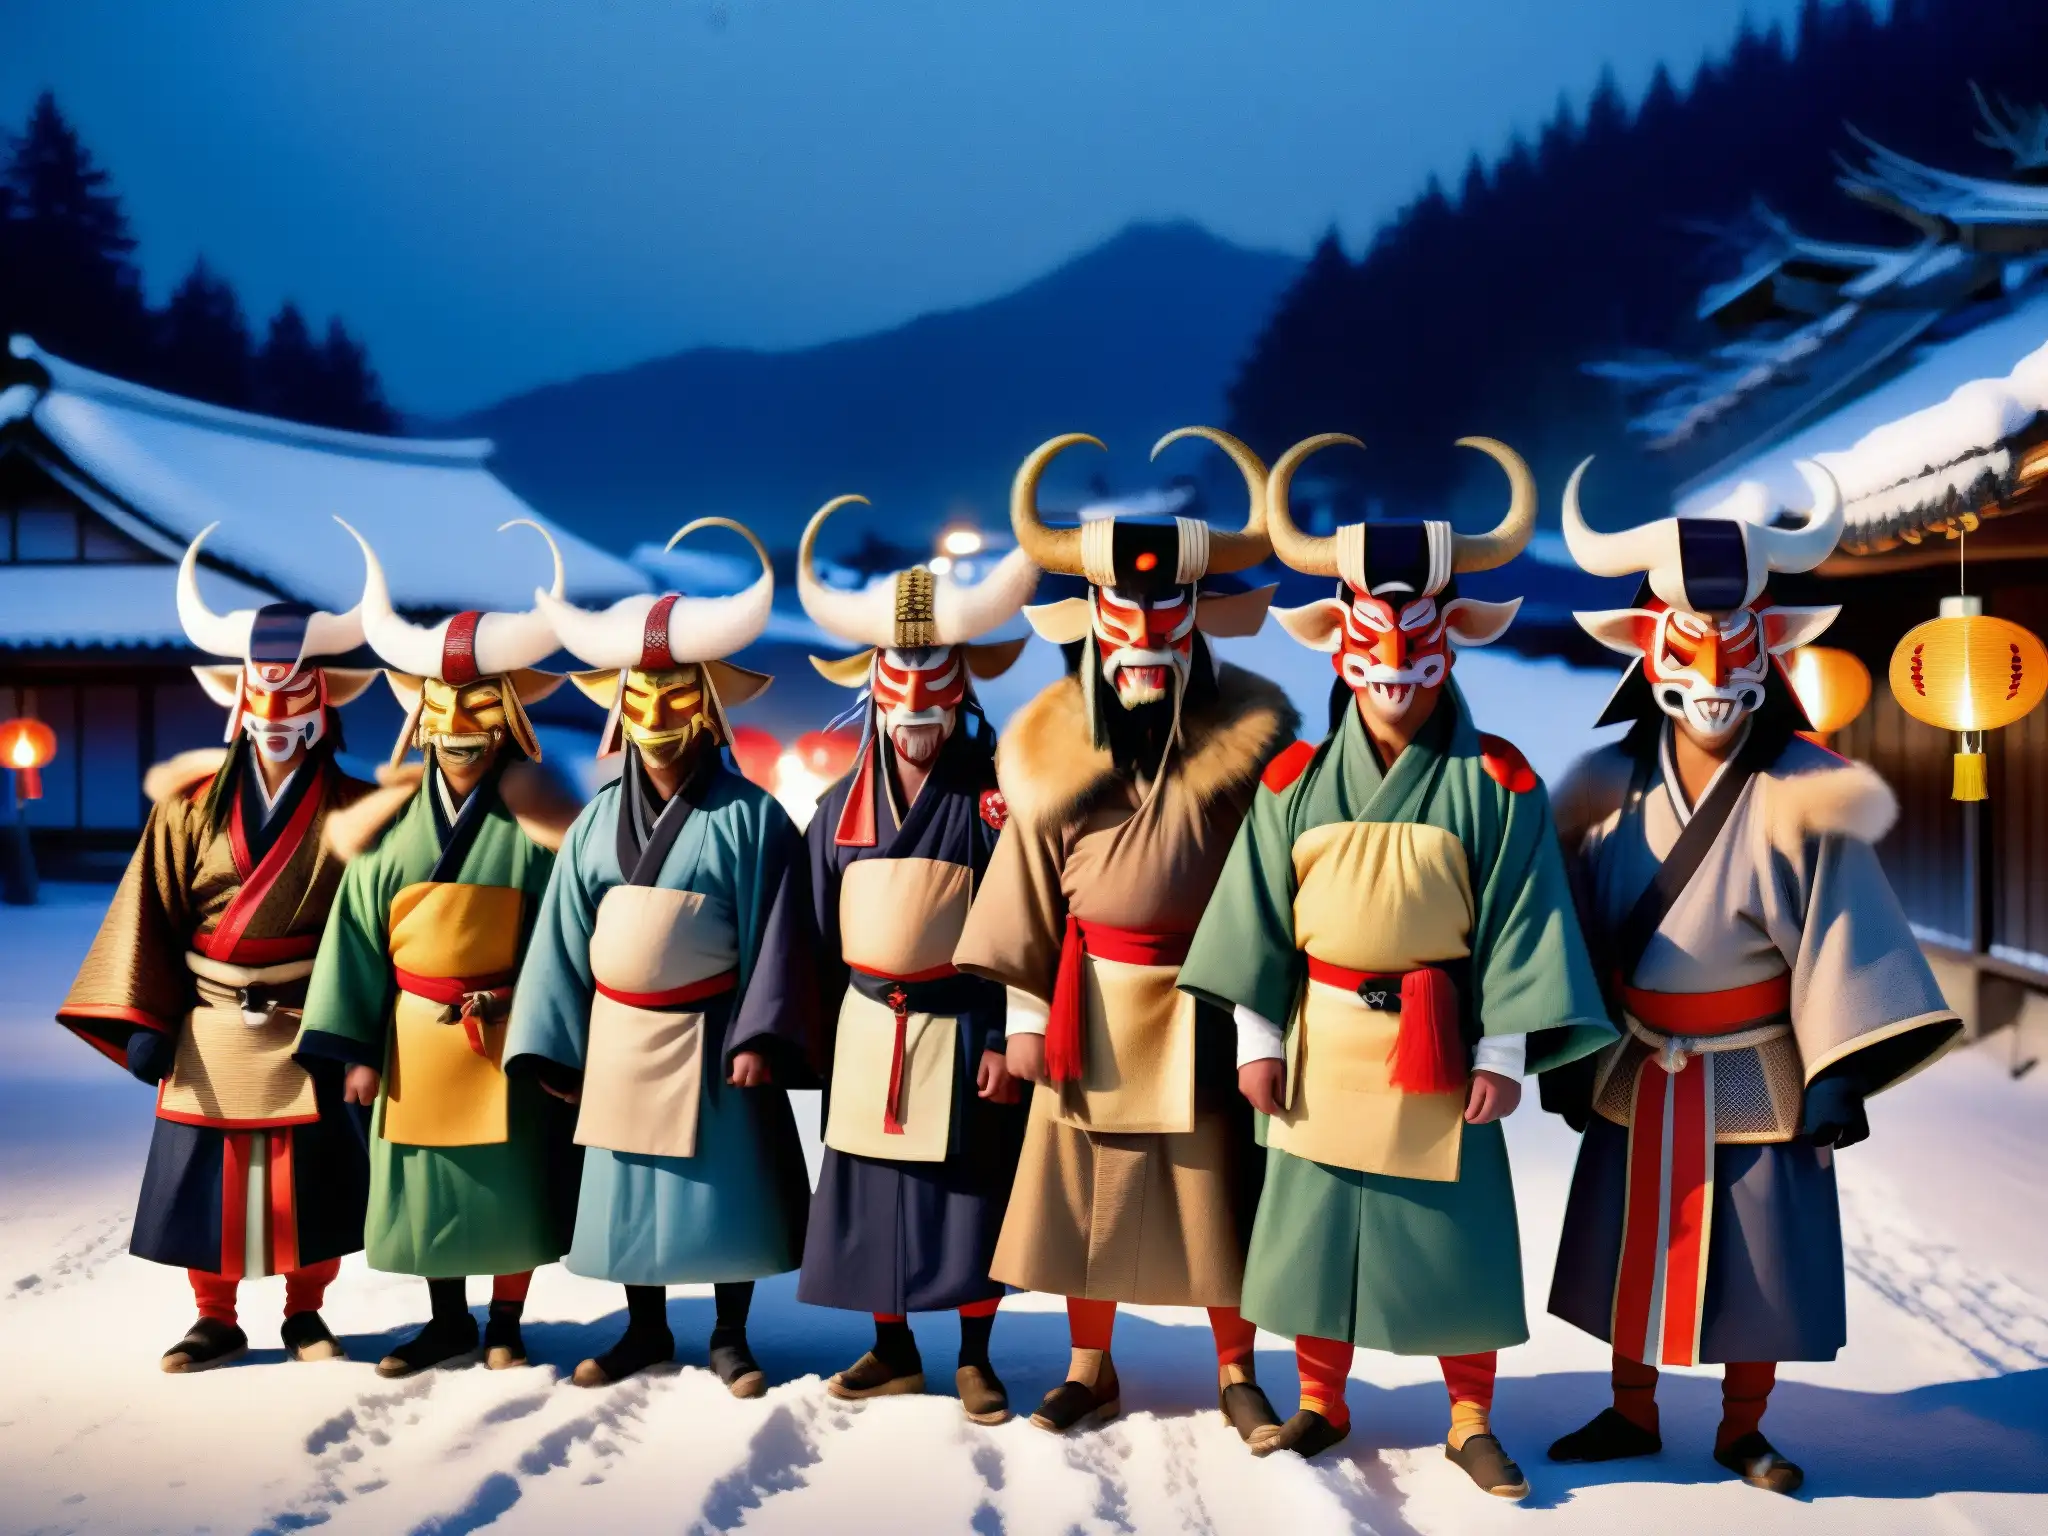 Un grupo de Namahage demonios en trajes tradicionales japoneses danza en una aldea nevada de noche, iluminados por faroles de papel